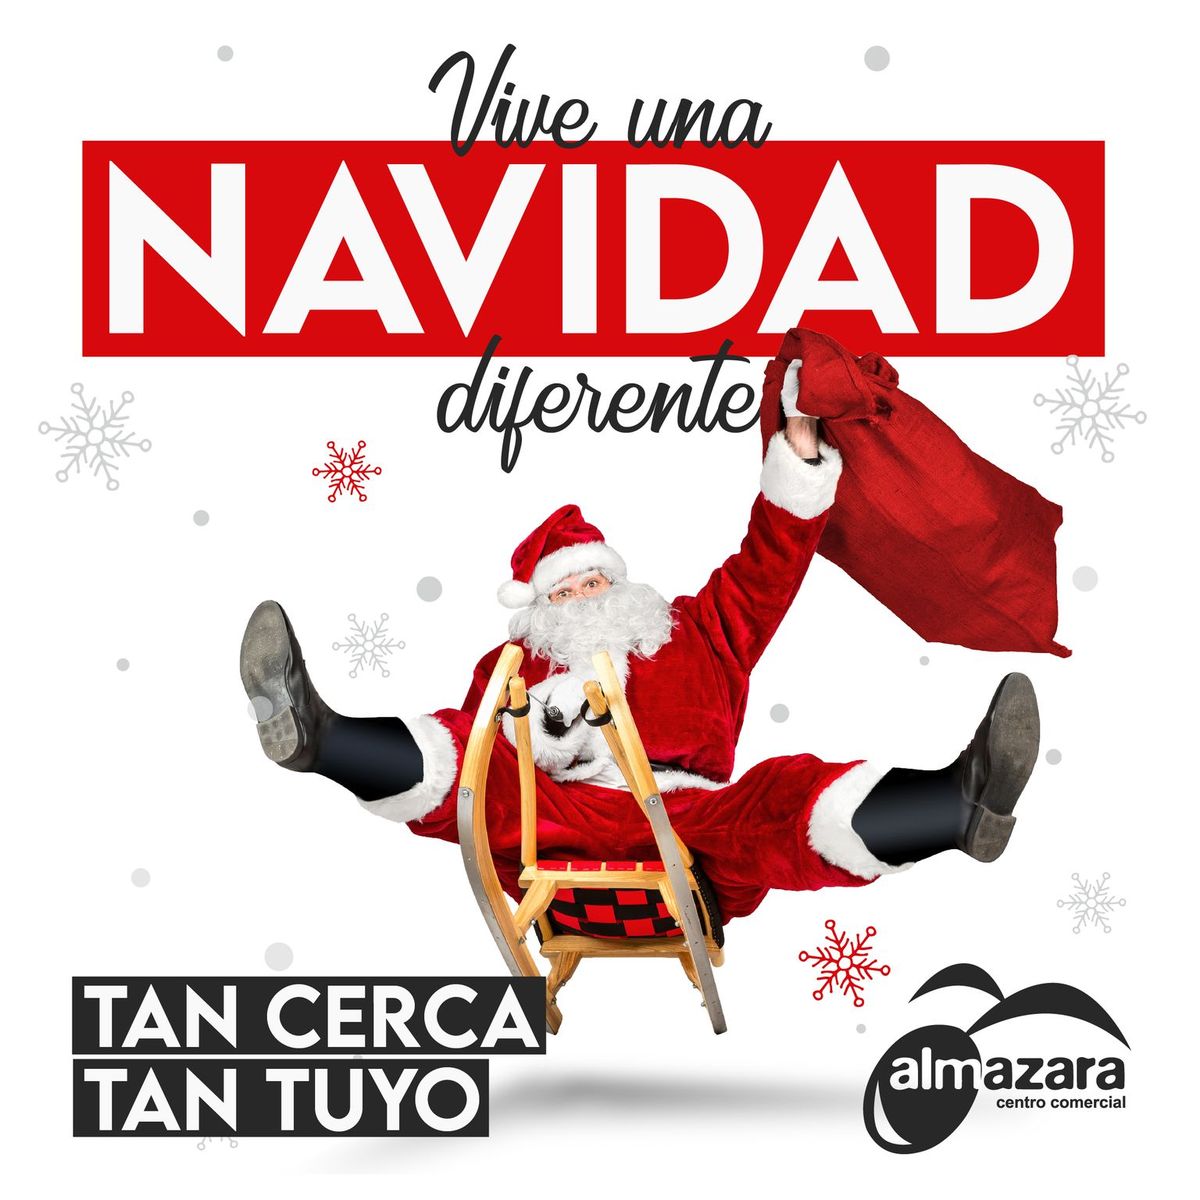 Vive la Navidad en familia en CC Almazara Plaza con actividades para todos y gran cesta navideña de 1000€